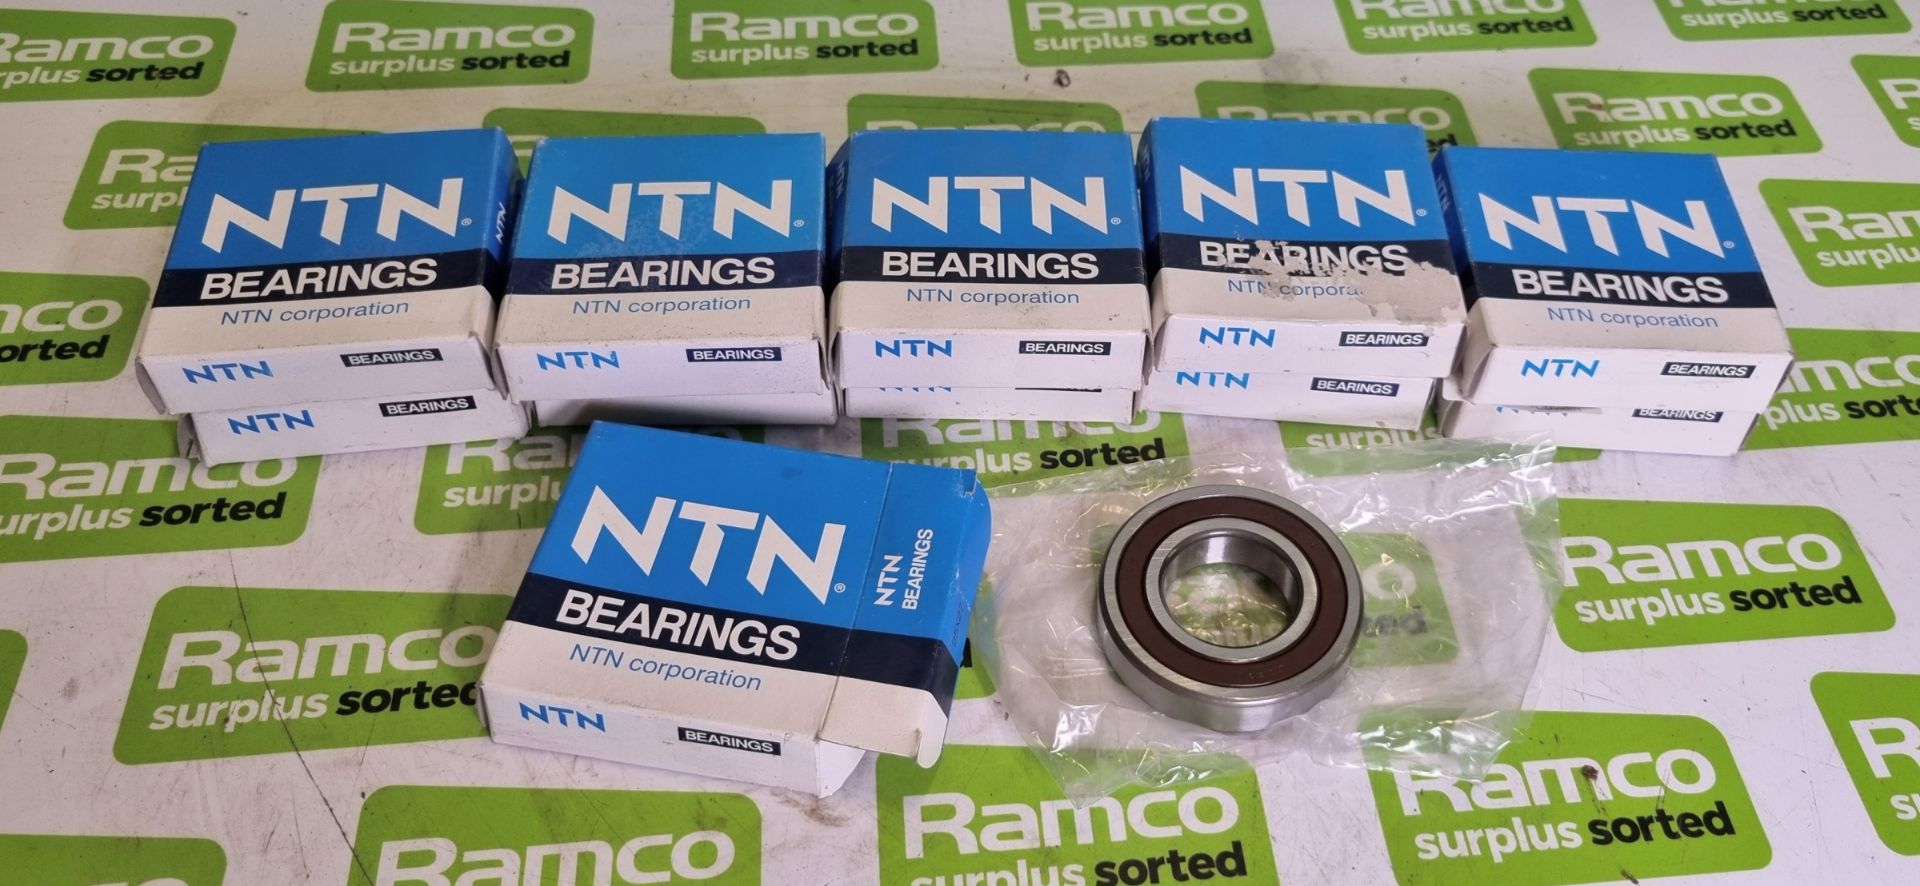 11x NTN bearings